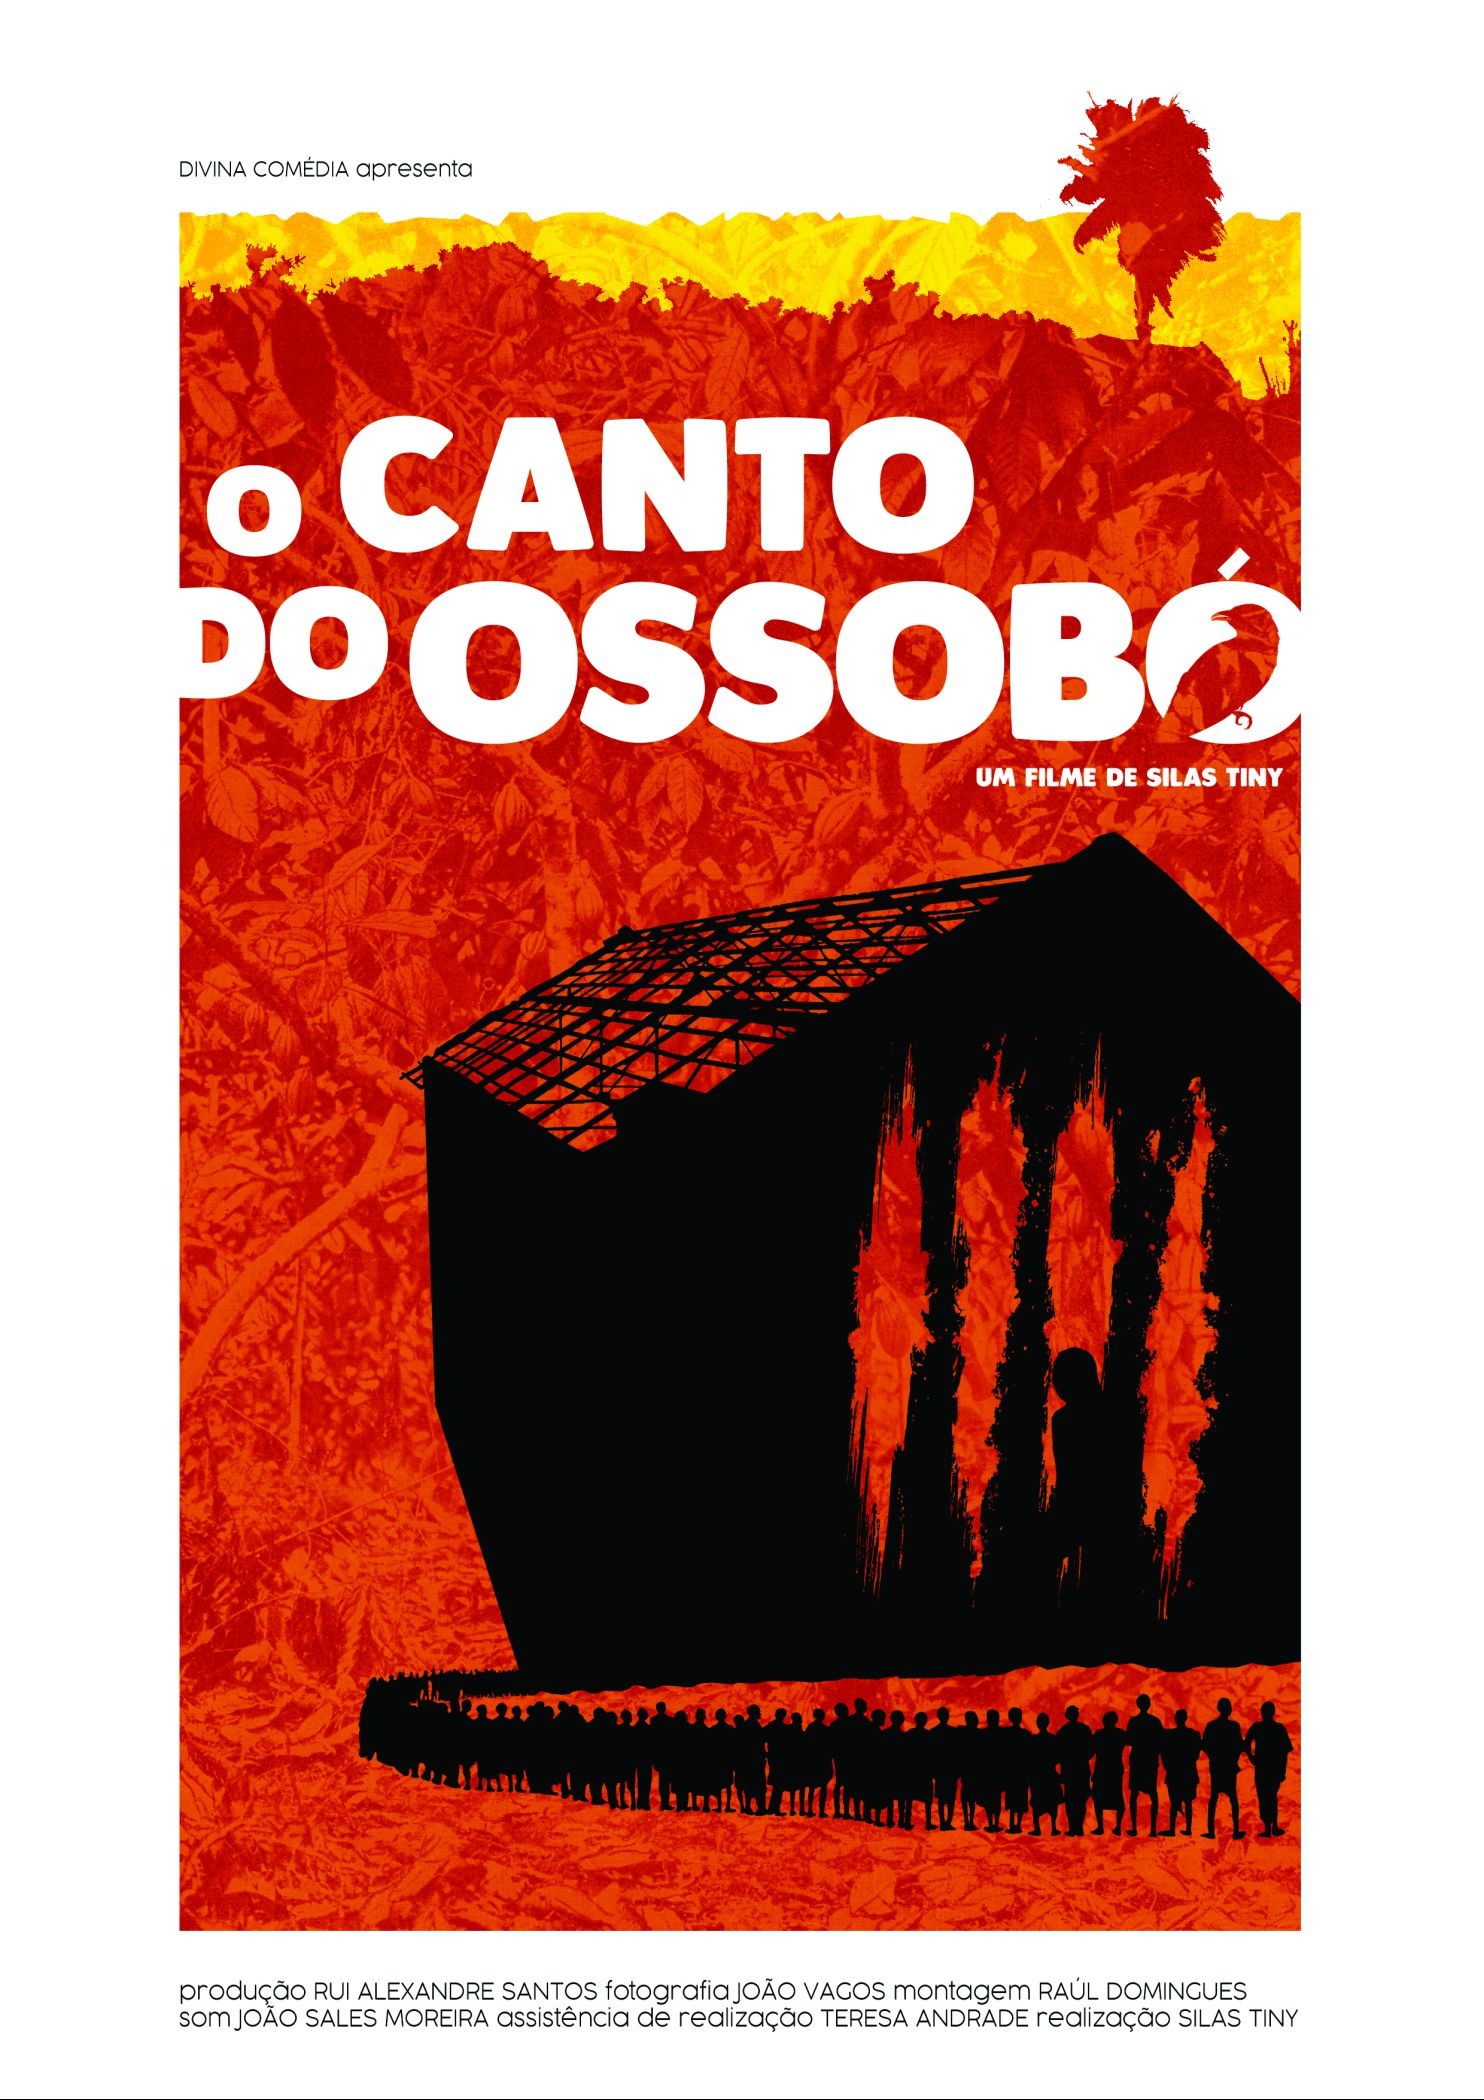 Mega Sized Movie Poster Image for O Canto de Ossobó 